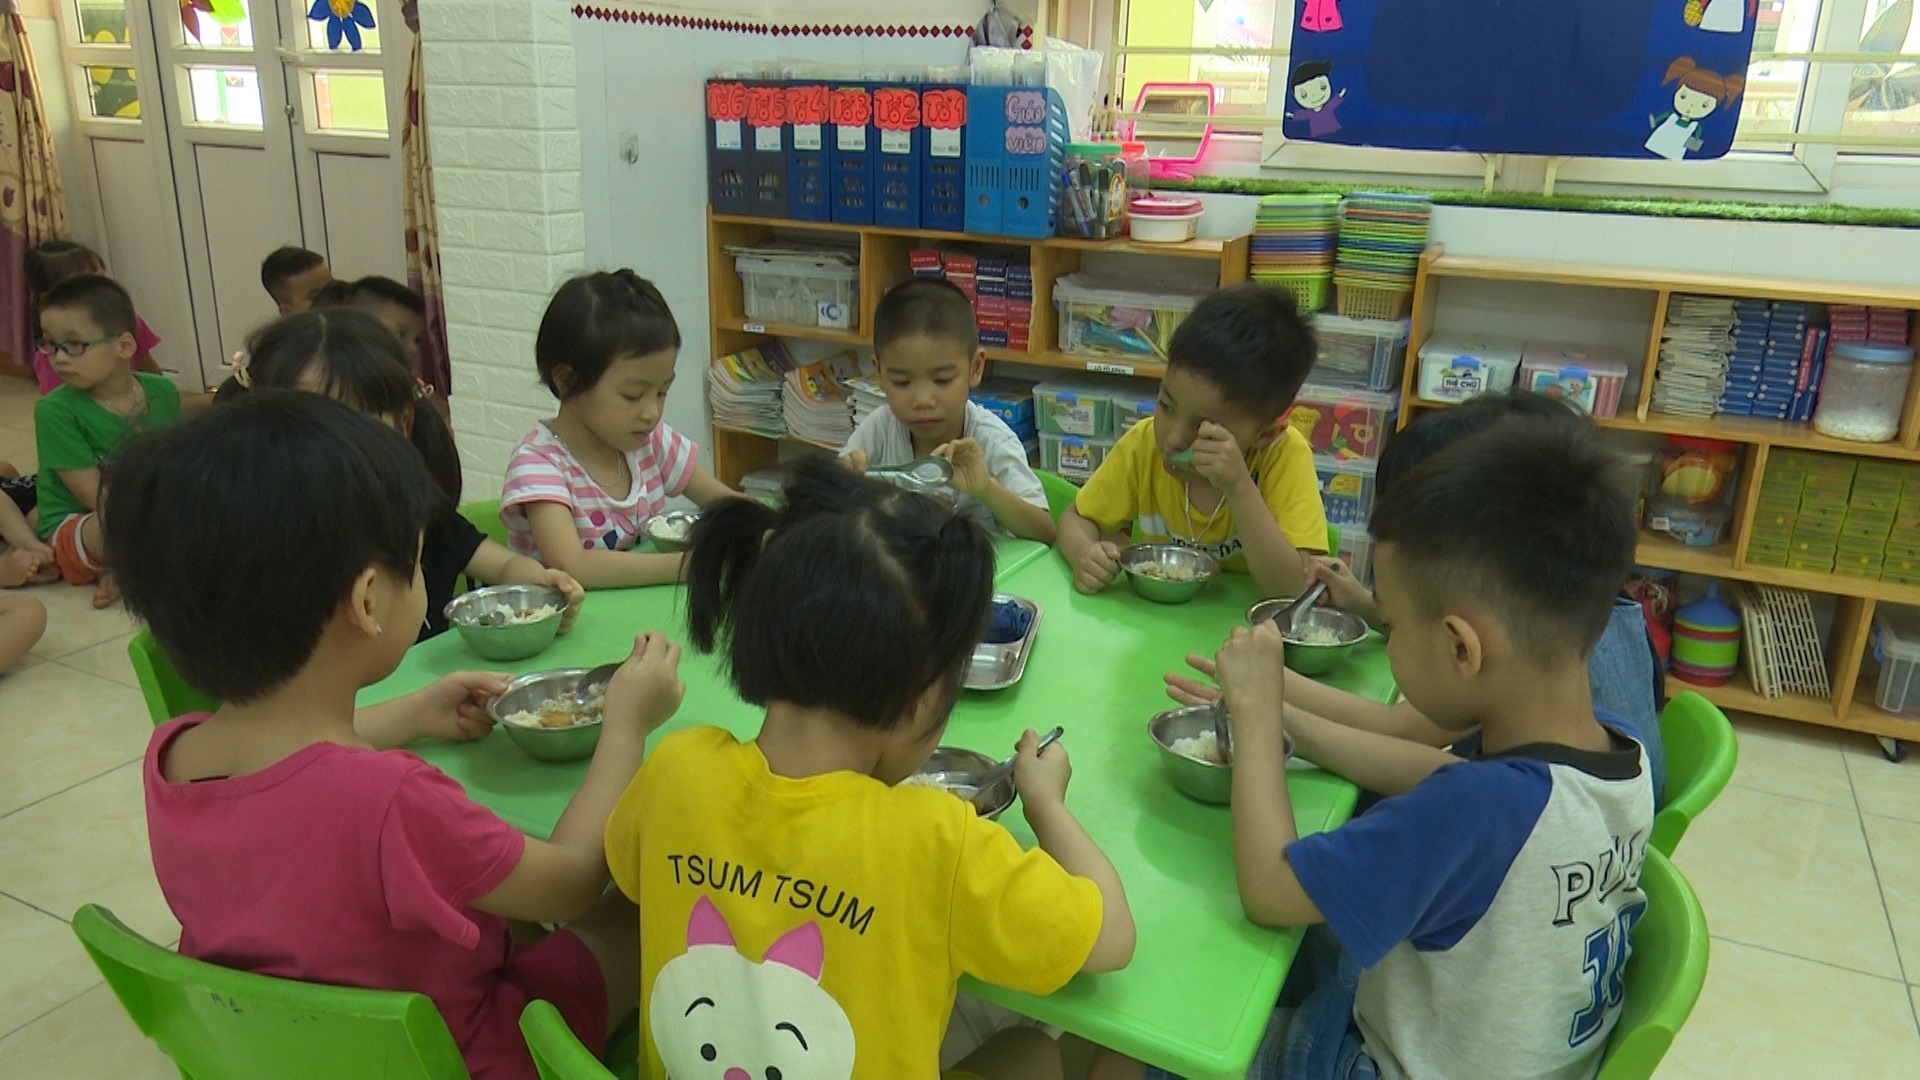 VIDEO: Gia Lộc đảm bảo an toàn cho trẻ khi ăn bán trú